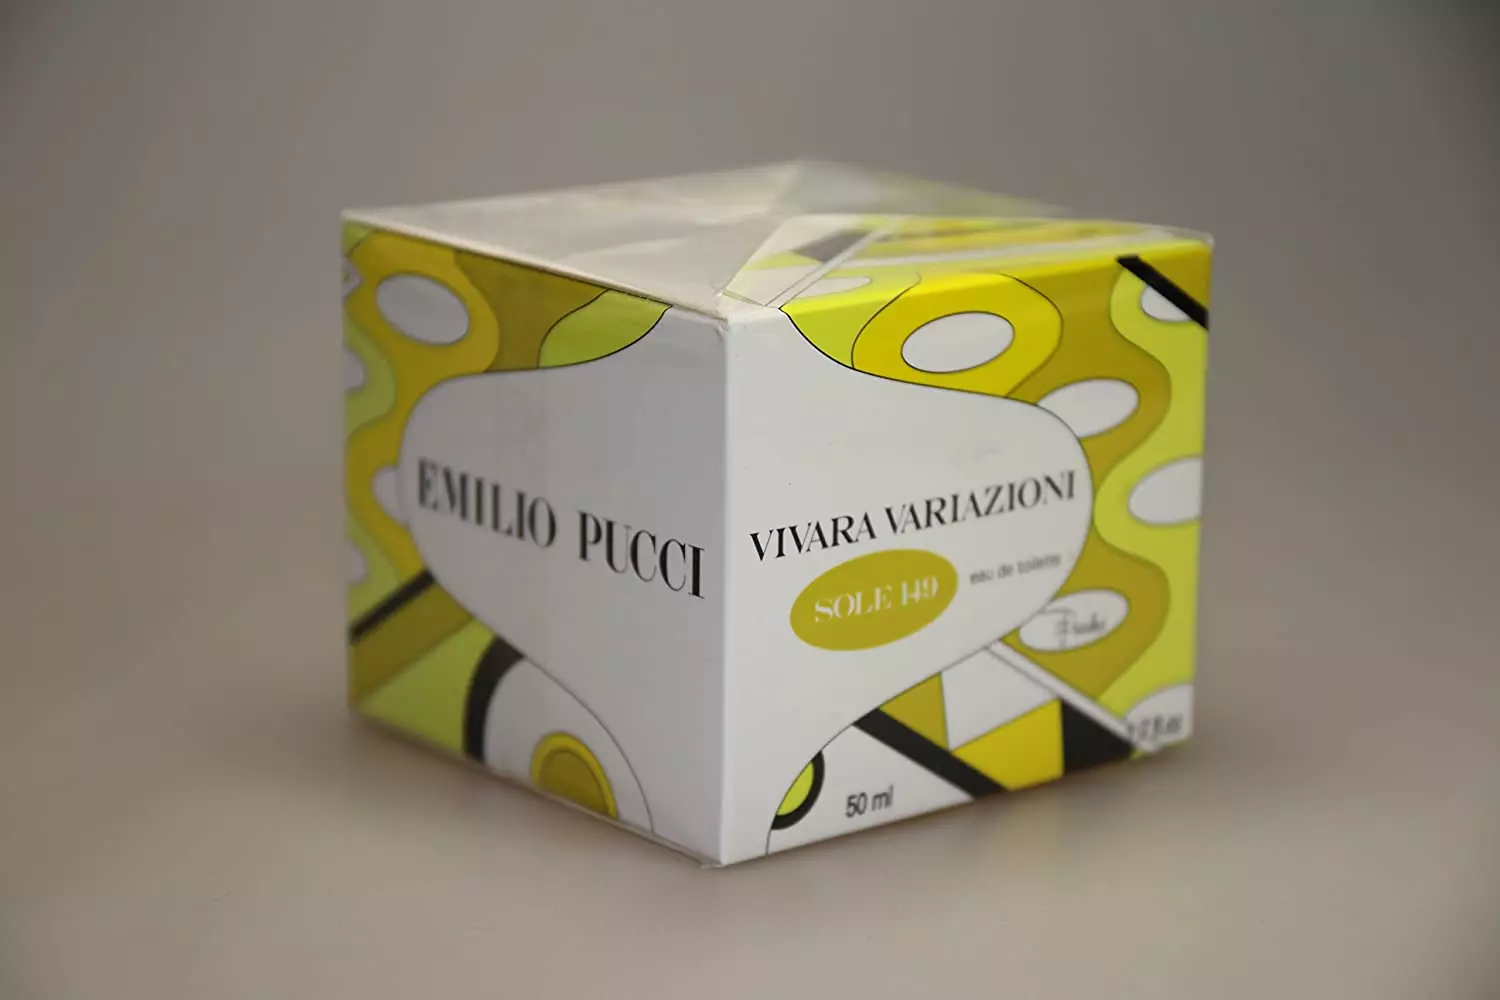 Emilio Pucci Perfum: Vivara Perfum, Perfum Miss Pucci i altres vendes d'aigua de la marca 25318_14